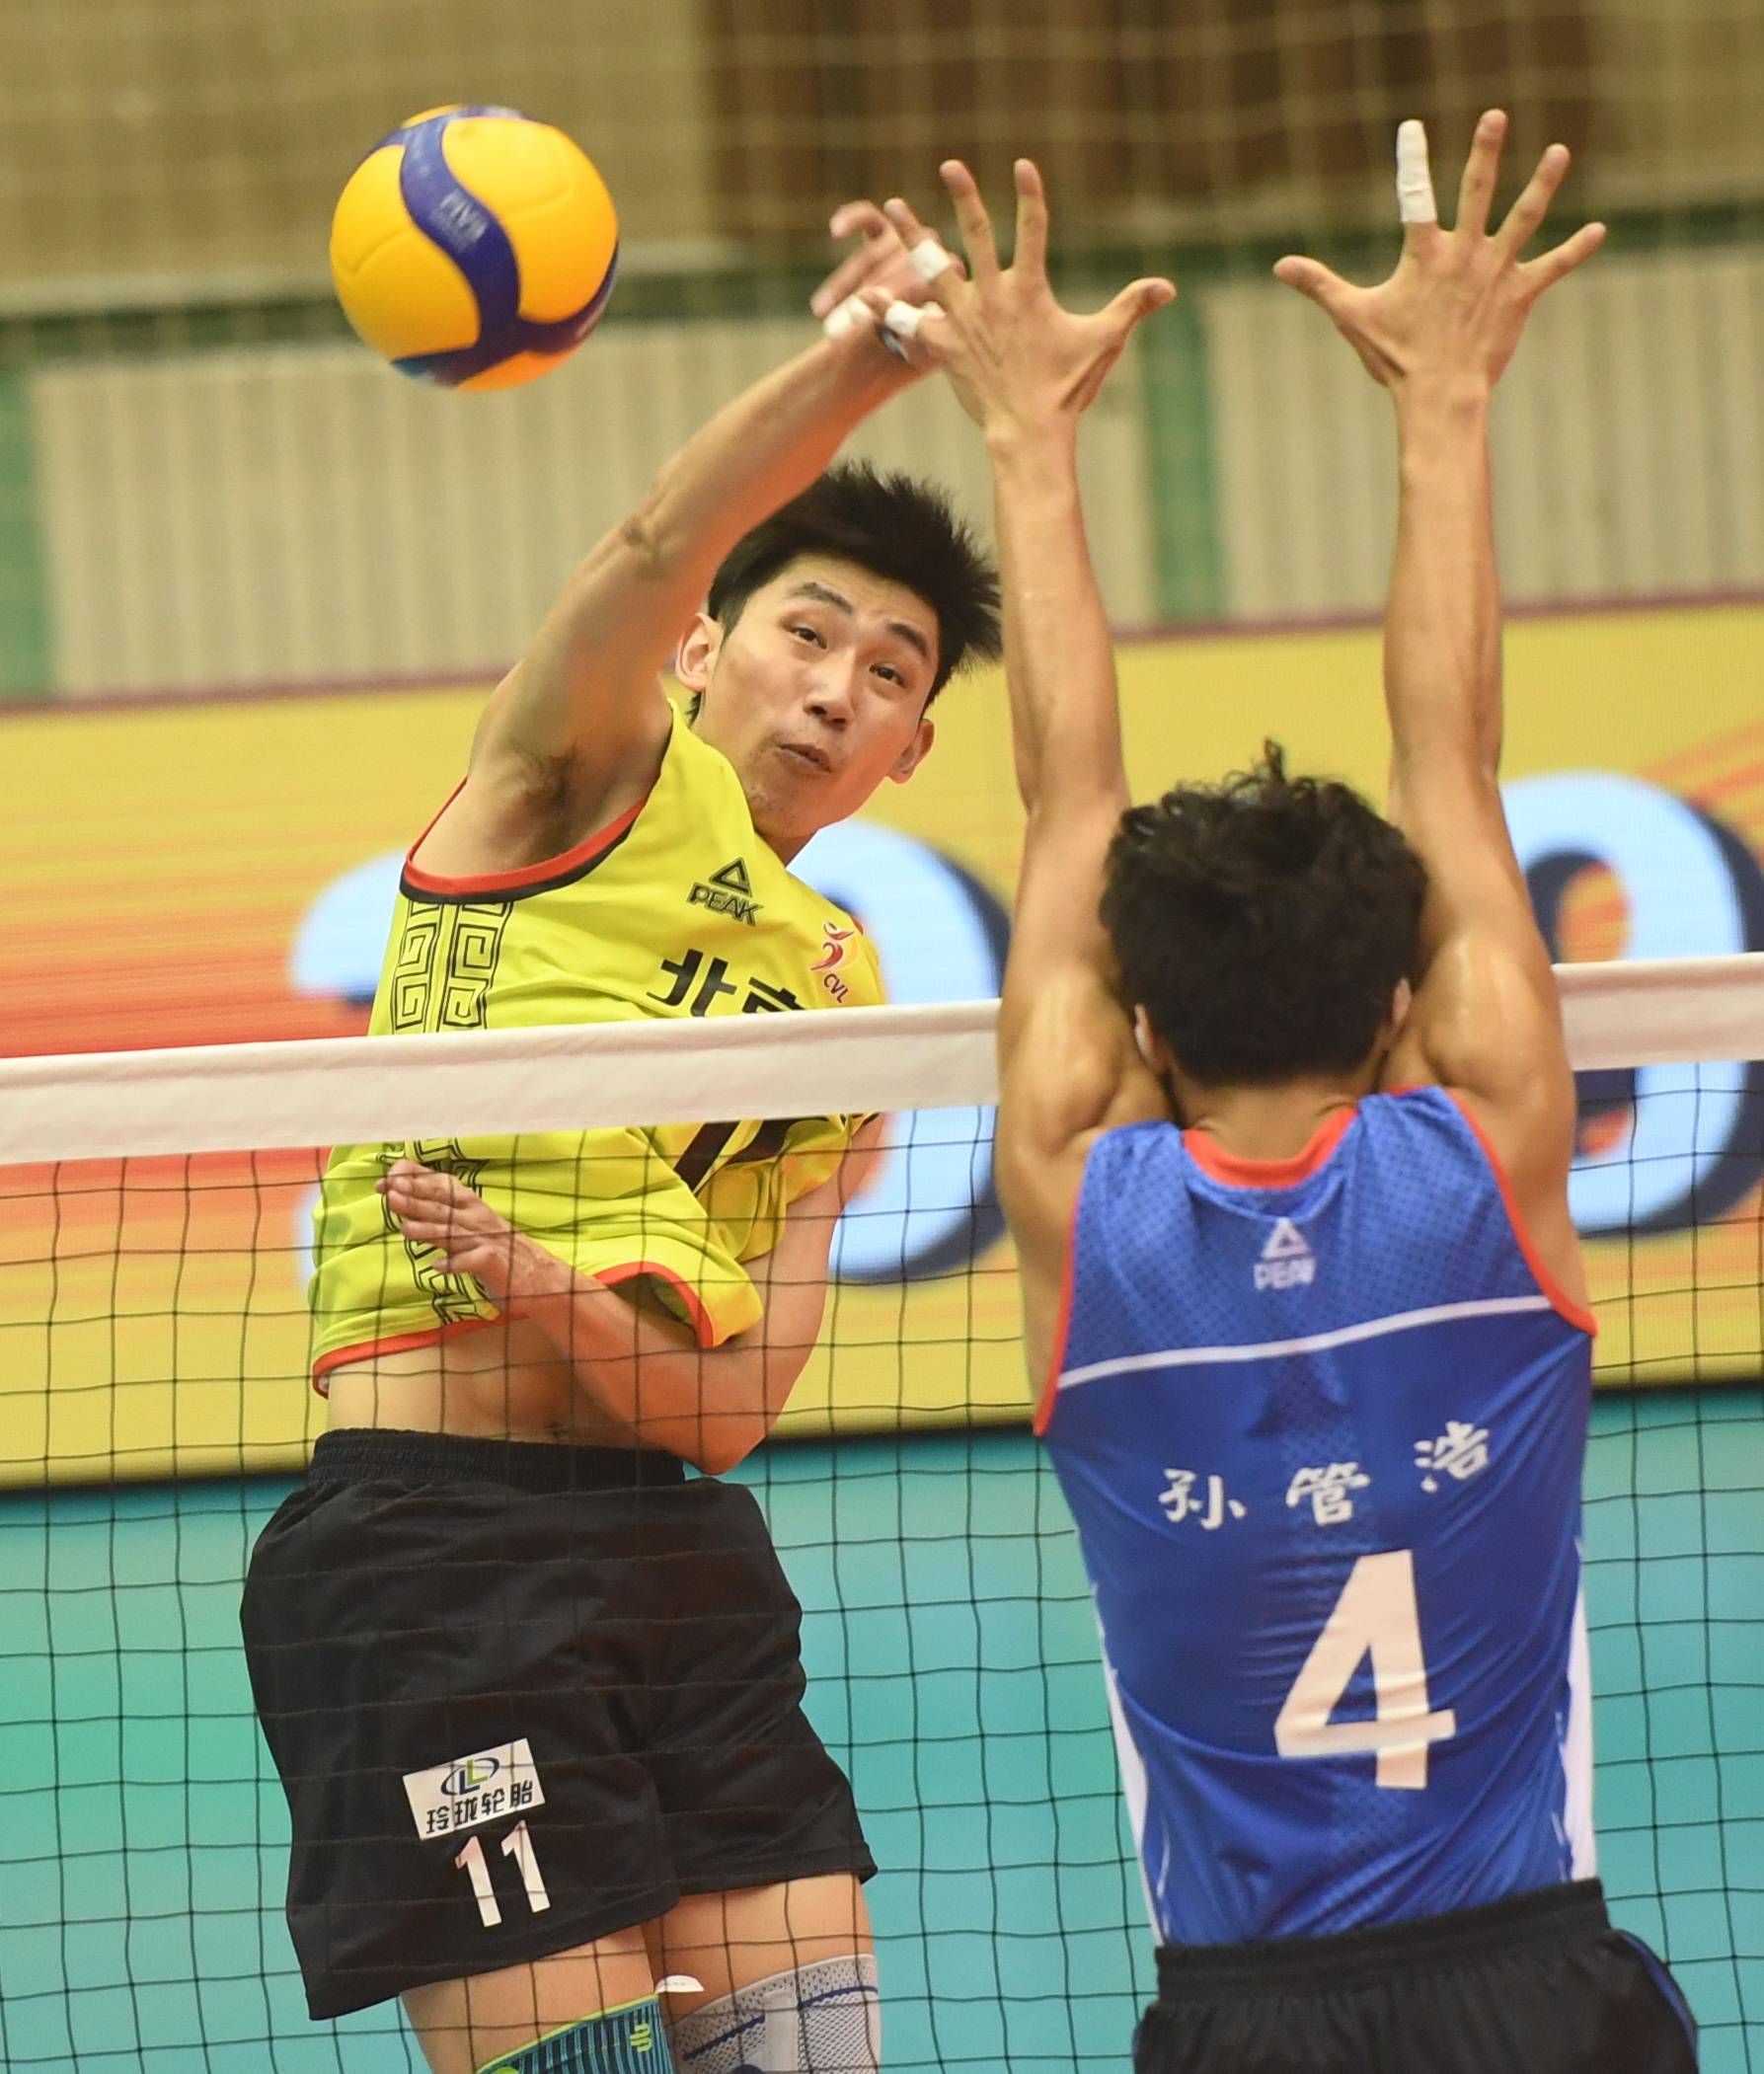 8月29日,北京汽车队球员江川(左)在比赛中进攻.